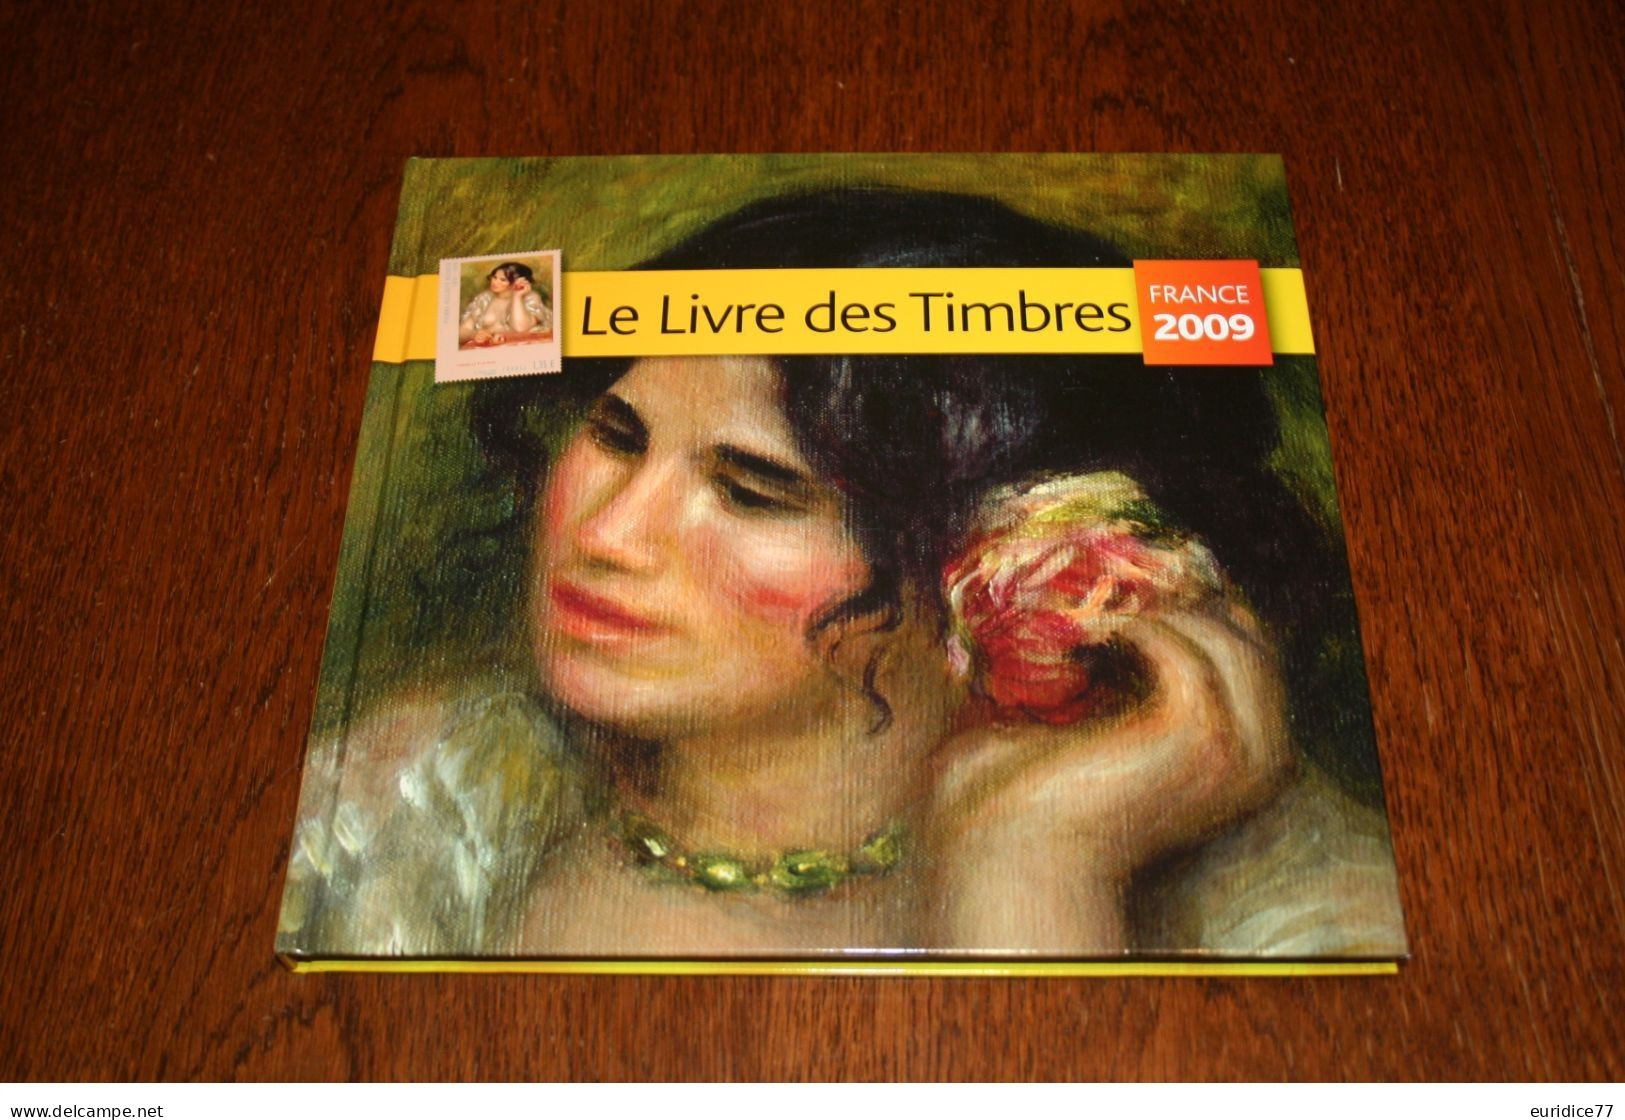 France 2009 - Le Livre Des Timbres 2009 Touts Les Timbres Et Blocs Mnh** - 2000-2009